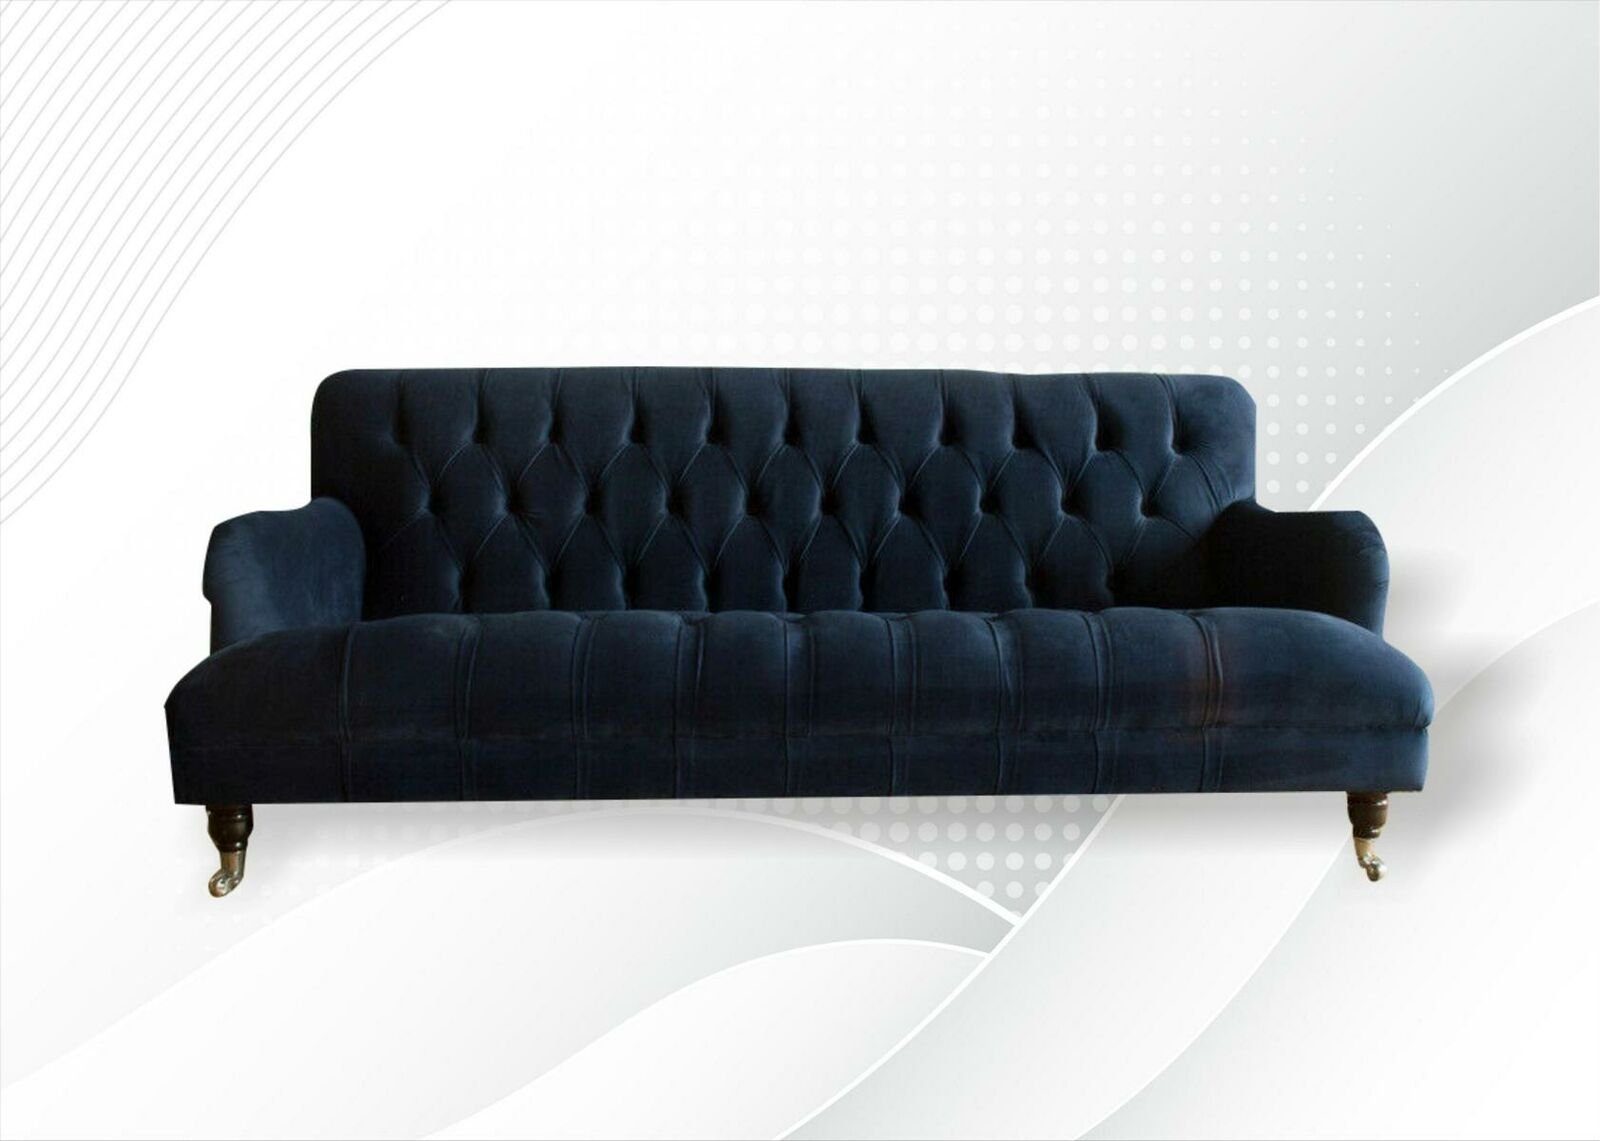 Stoff Textil Blaue Sofas JVmoebel Couchen Sofa Modern Wohnzimmer Möbel Chesterfield-Sofa, Chesterfield Neu